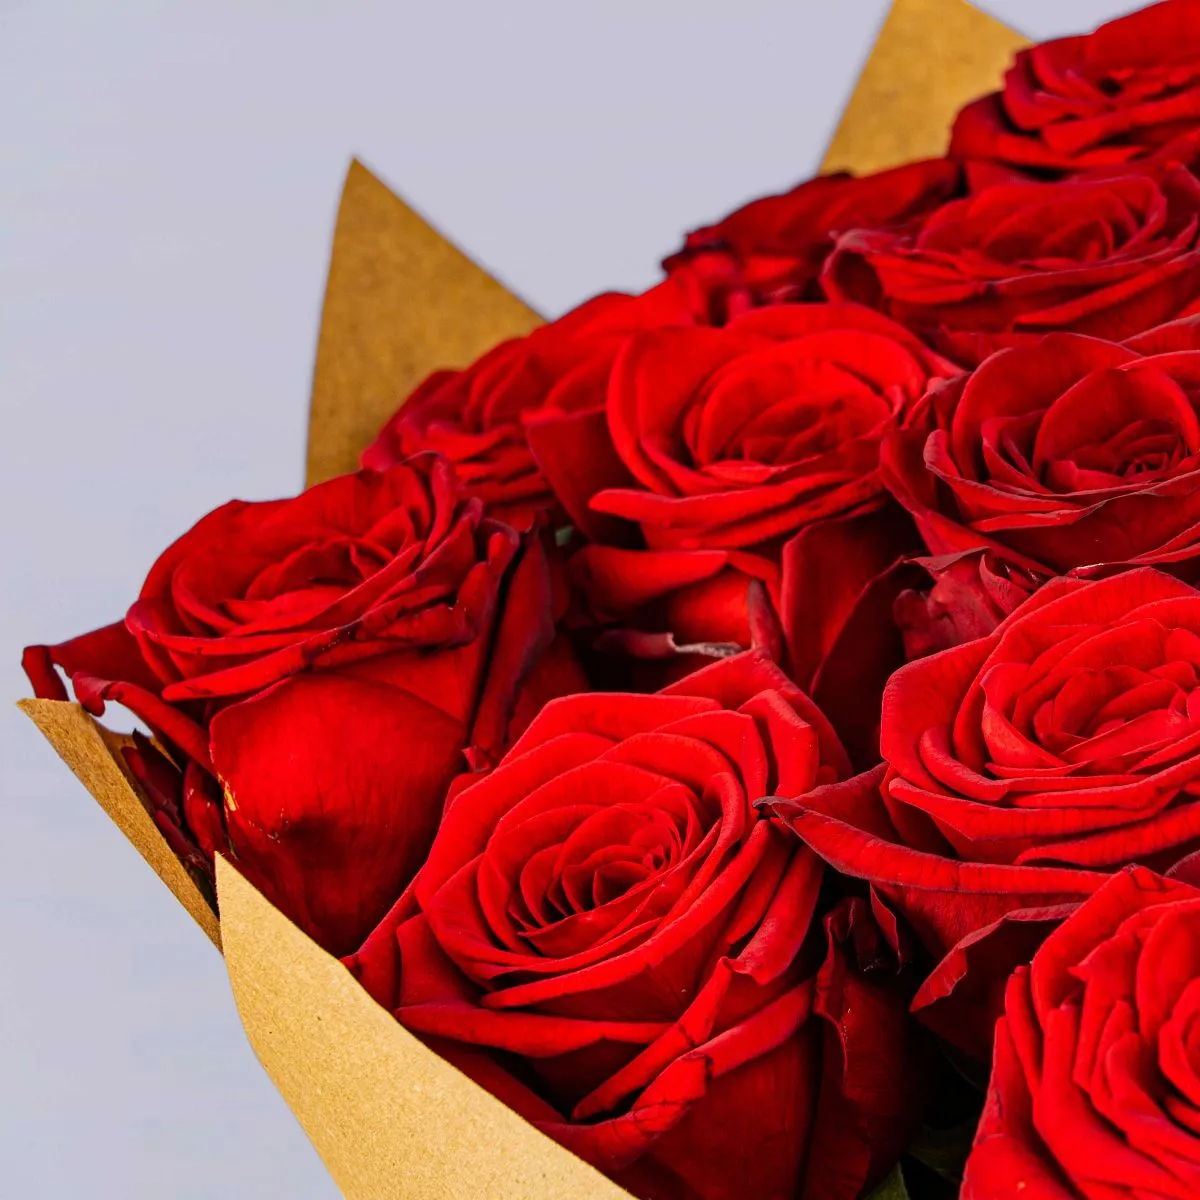 33 красные розы (70 см)